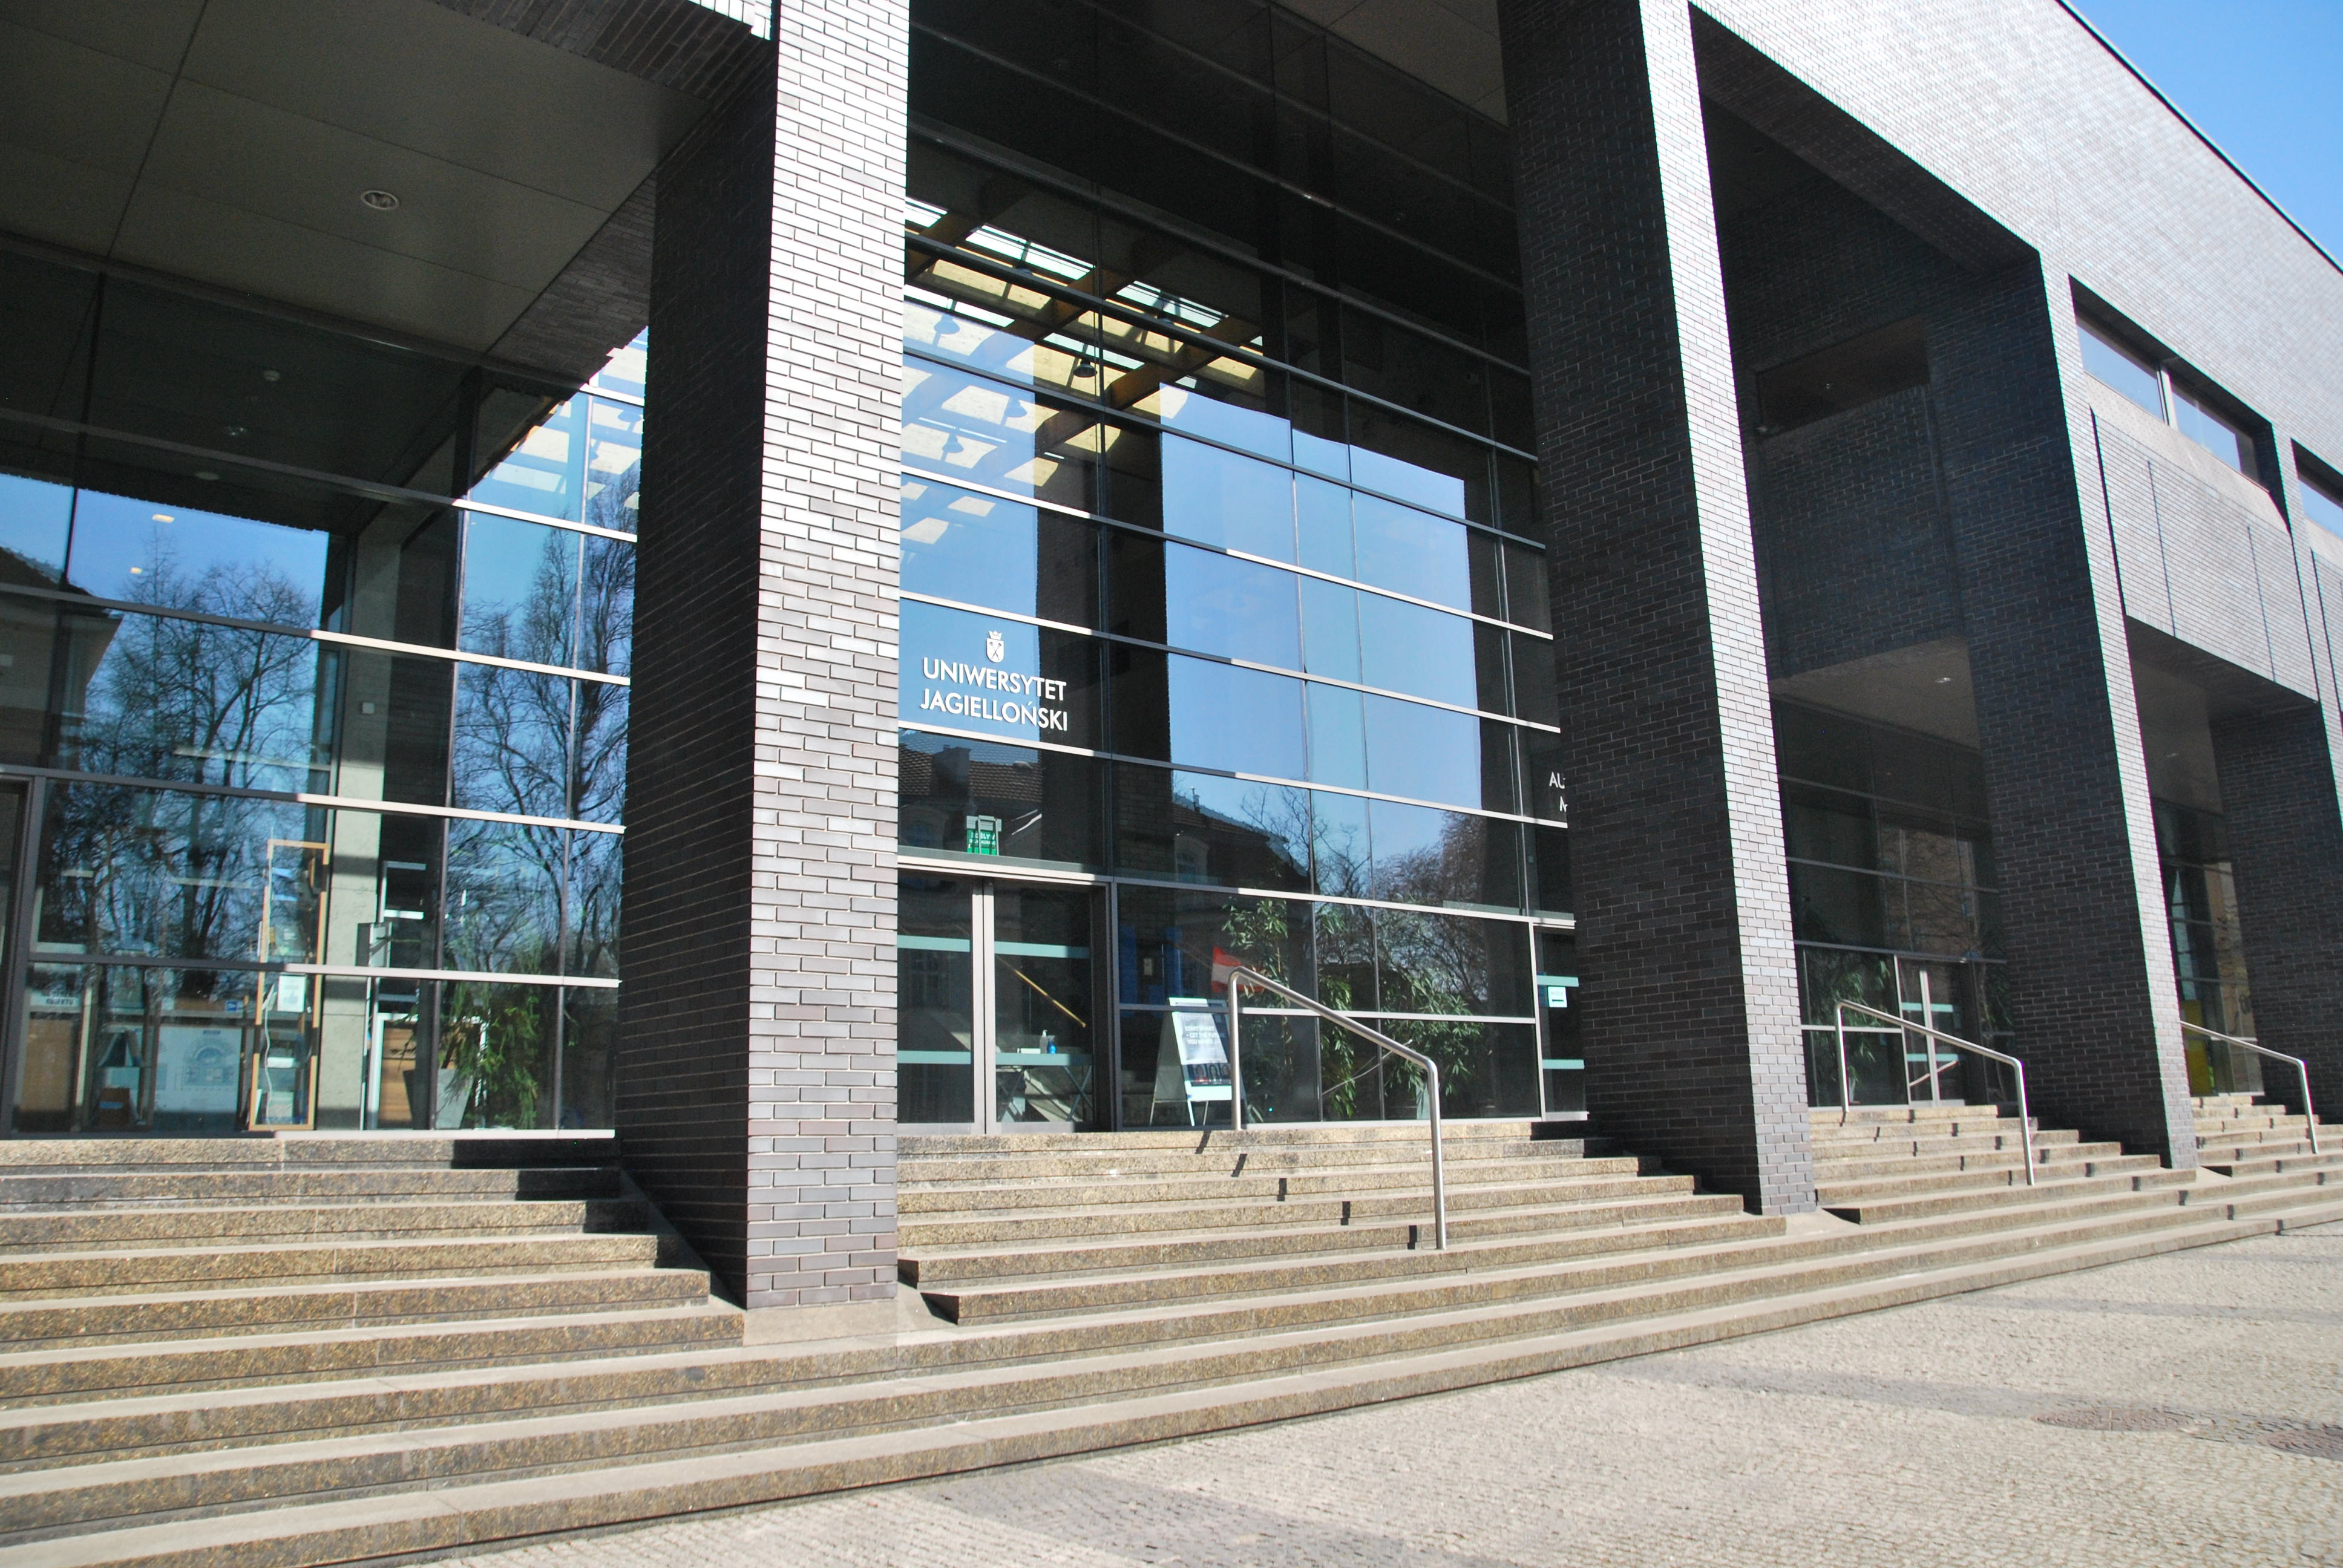 Wejście główne do Auditorium Maximum. Znajduje się ono w szklanej fasadzie, pomiędzy dwoma kolumnami. Do wejścia prowadzą schody, przy których znajdują się poręcze.